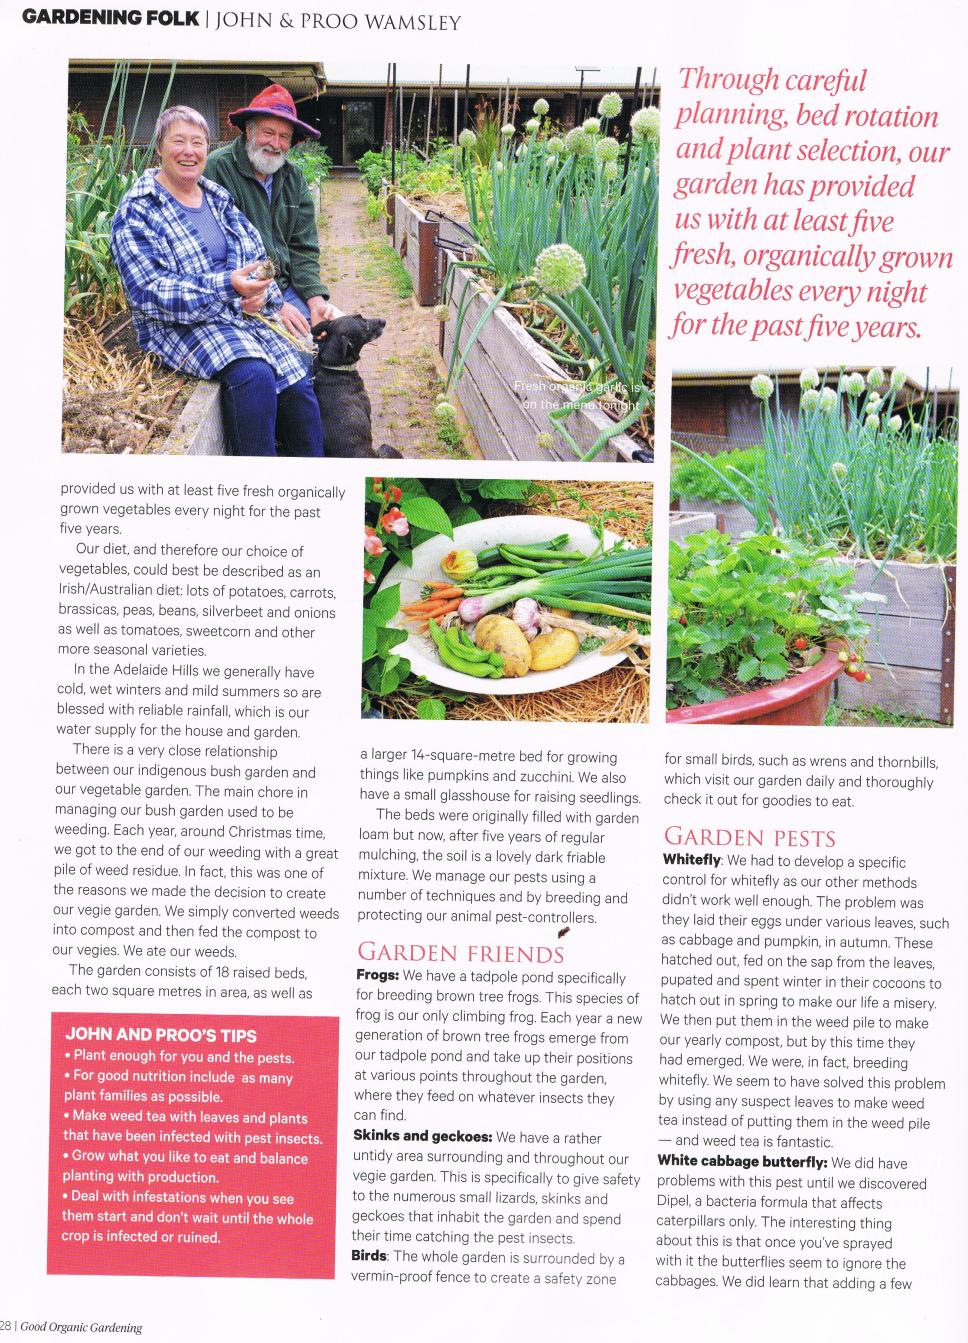 Good Organic Gardening Article